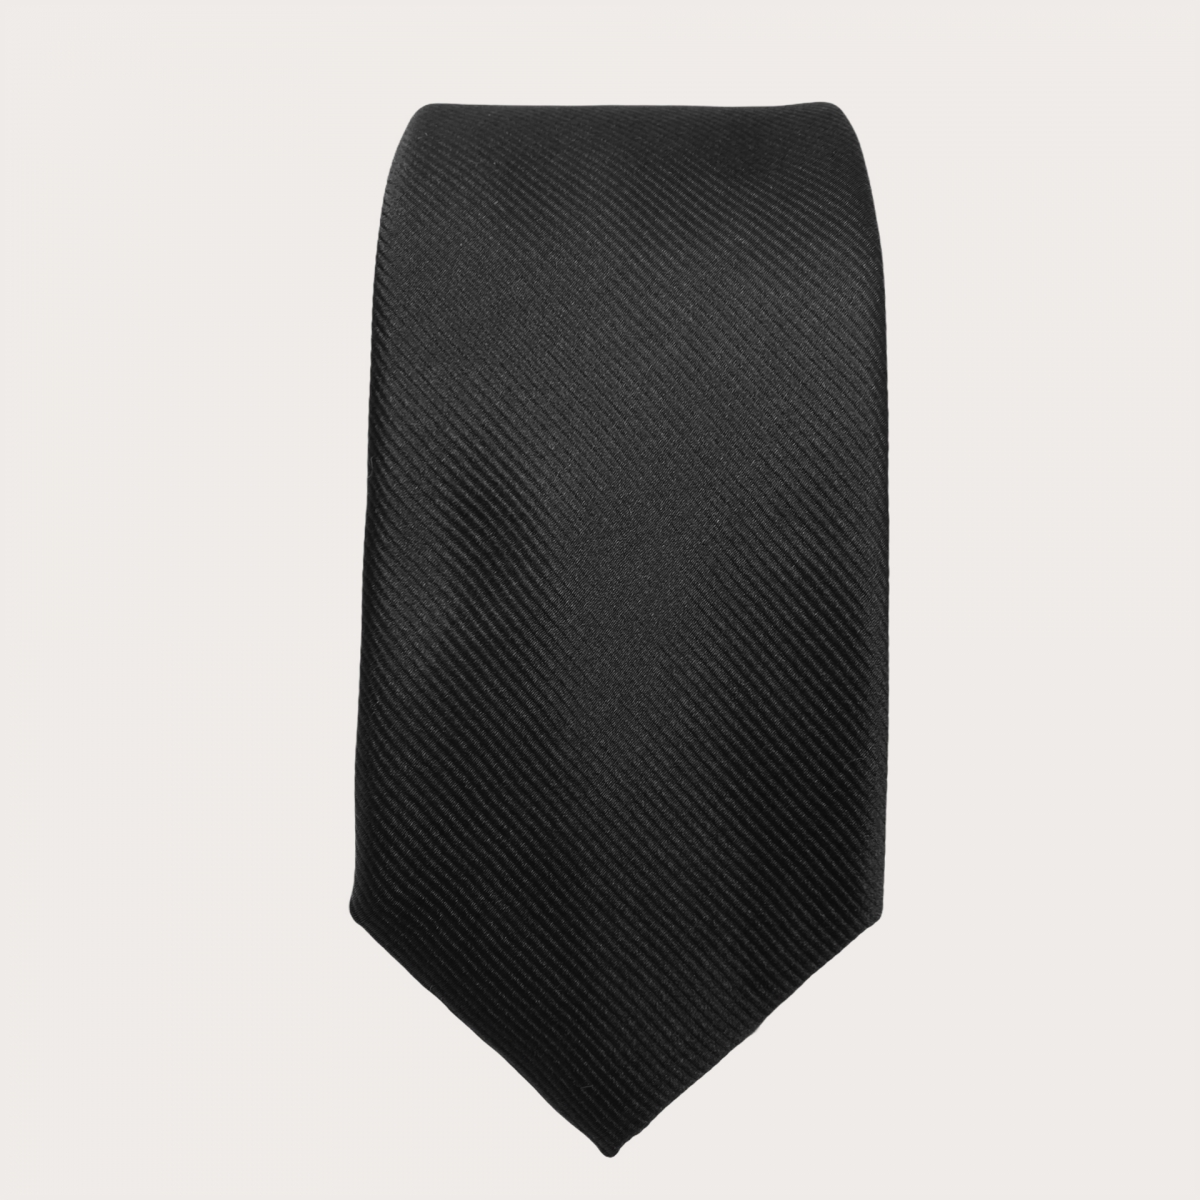 BRUCLE Klassische Krawatte aus reiner Seide, schwarz